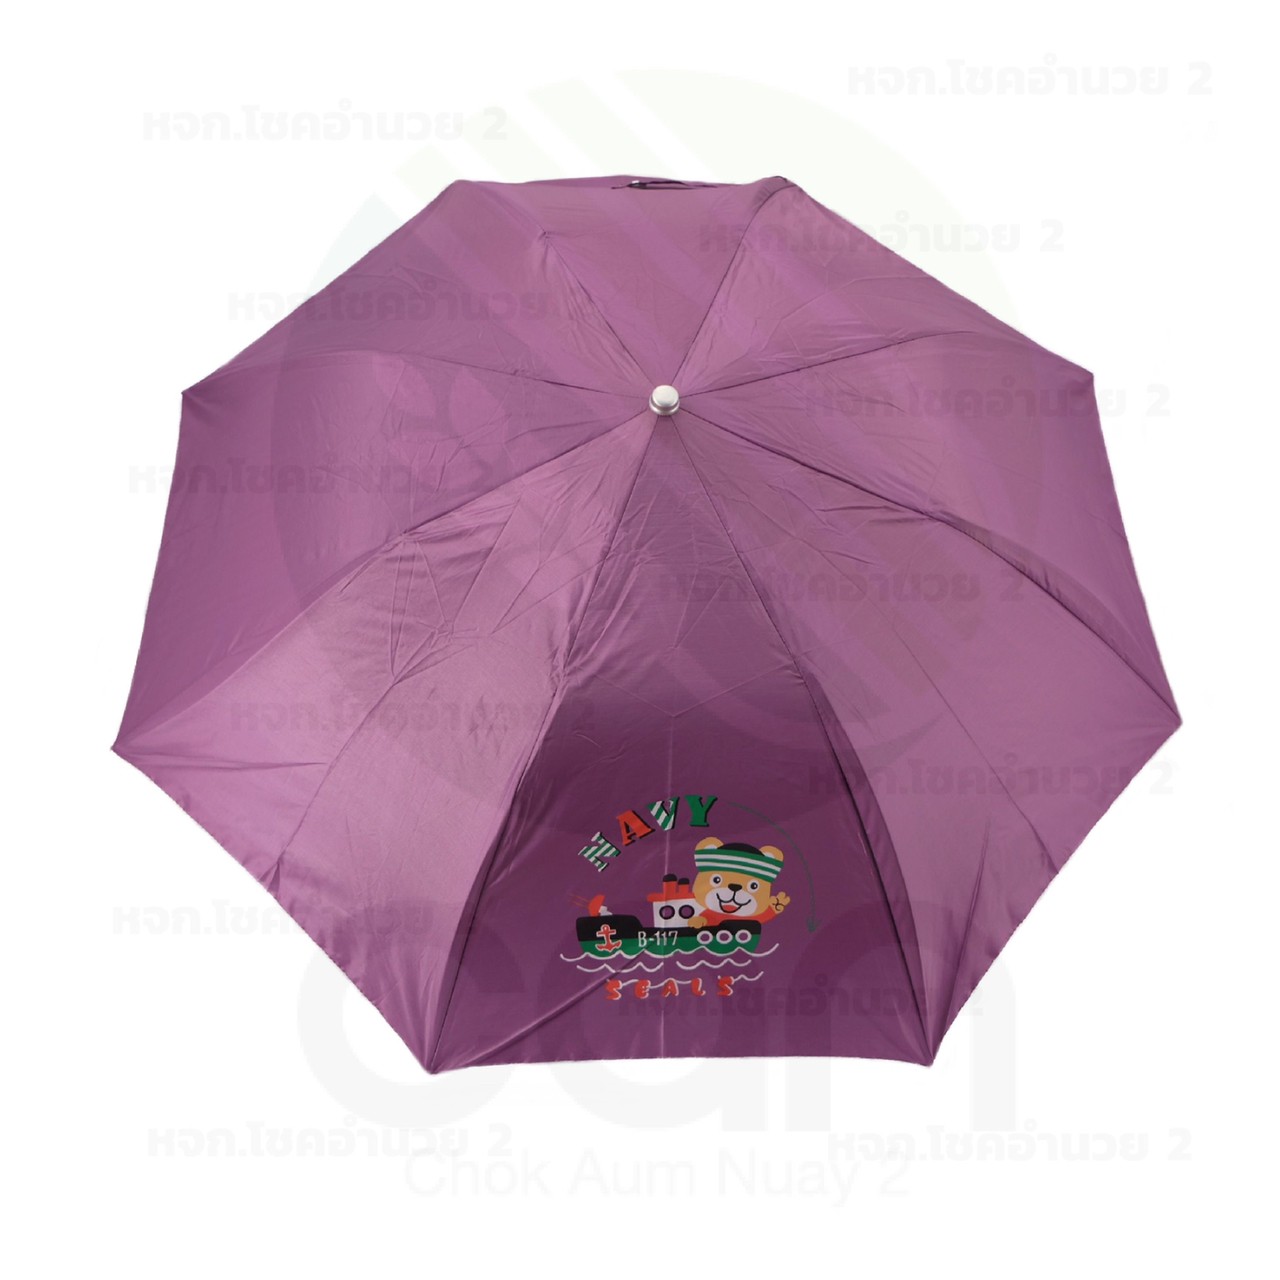 ร่มพับ 2 ตอน กันยูวี กันฝน เลือกสีได้ คละสี สีพื้น สีทูโทน ร่มพกพา ร่มกันแดด ร่มกันUV Umbrella ร่มถือ